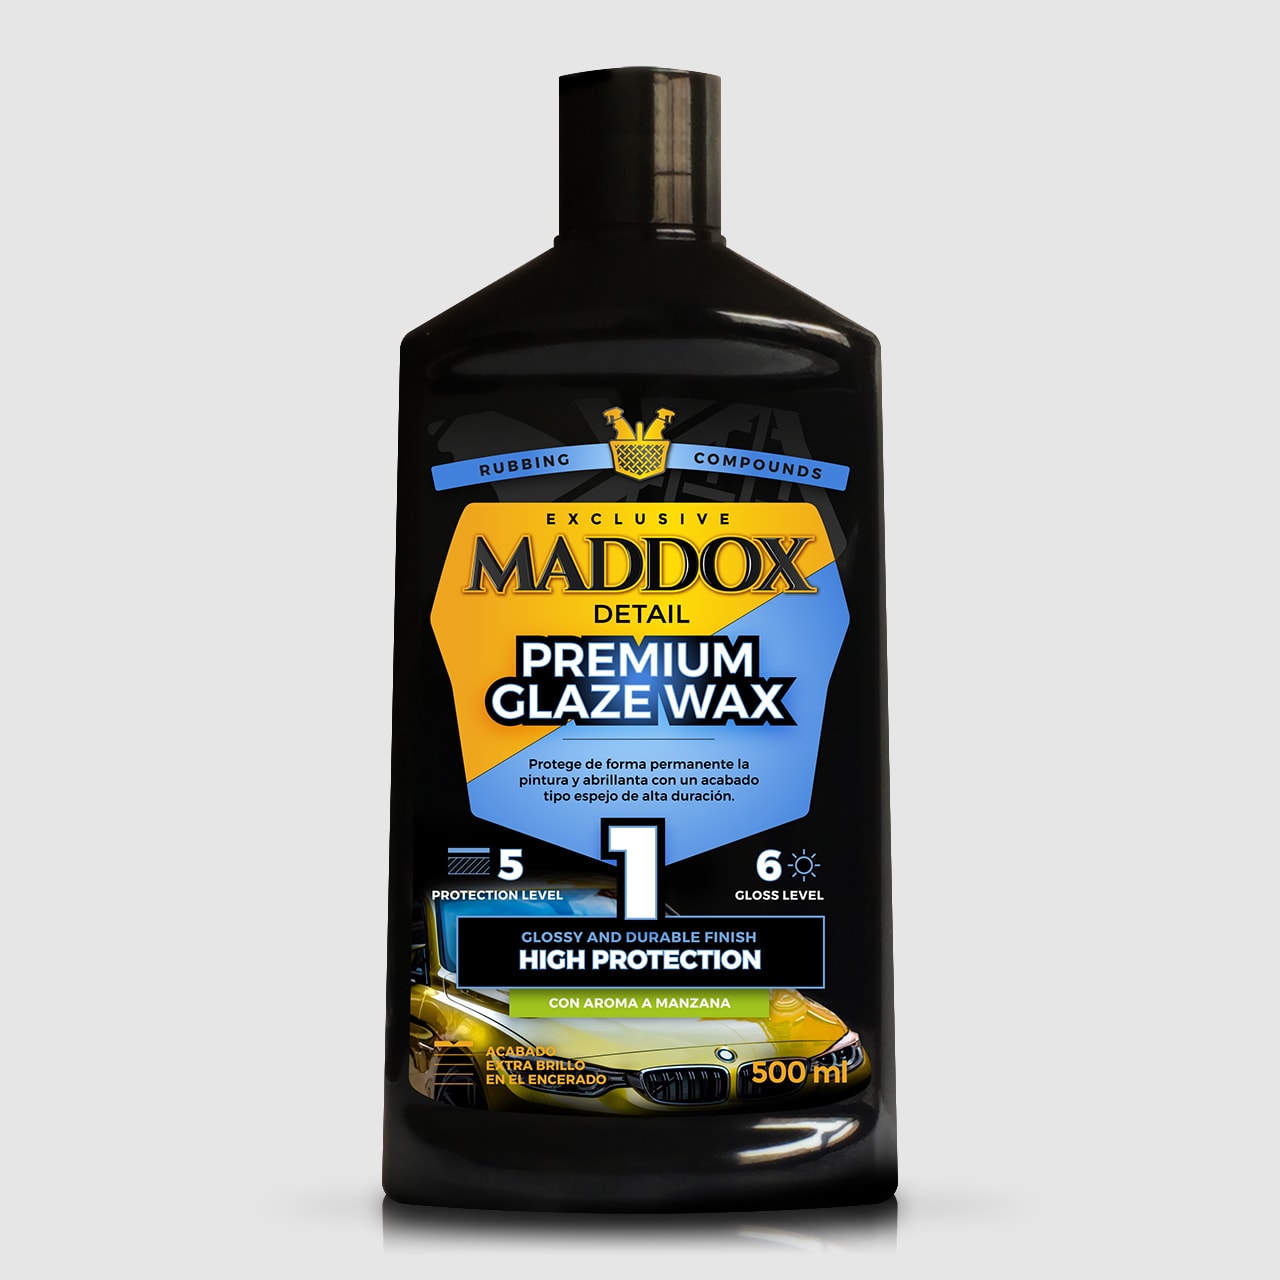 Maddox Detail, la marca referente en Car Detailing lanza su gama